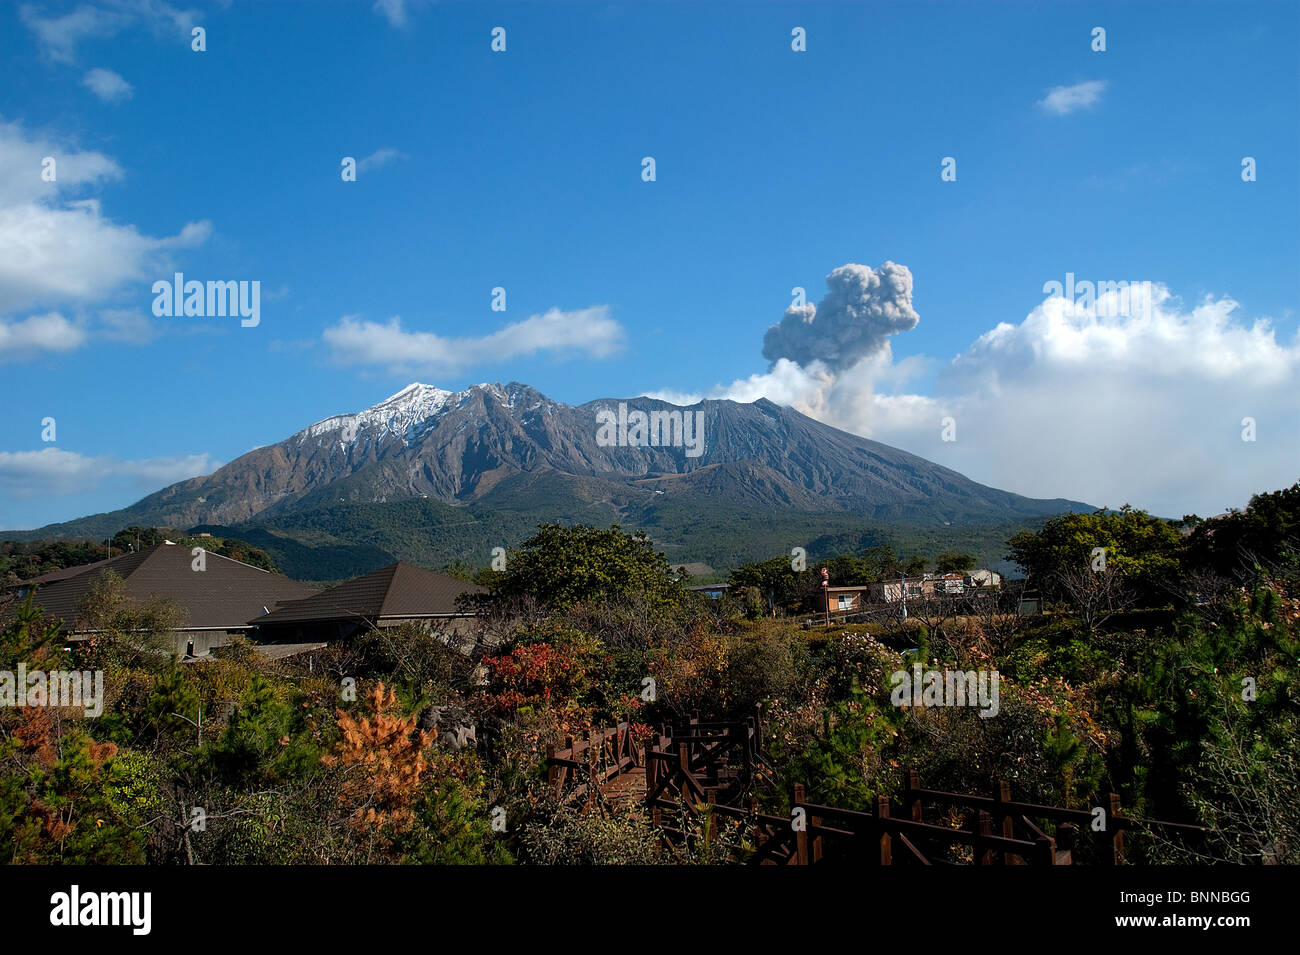 Sakurajima volcano in Kagoshima, Kyushu, Japan Stock Photo